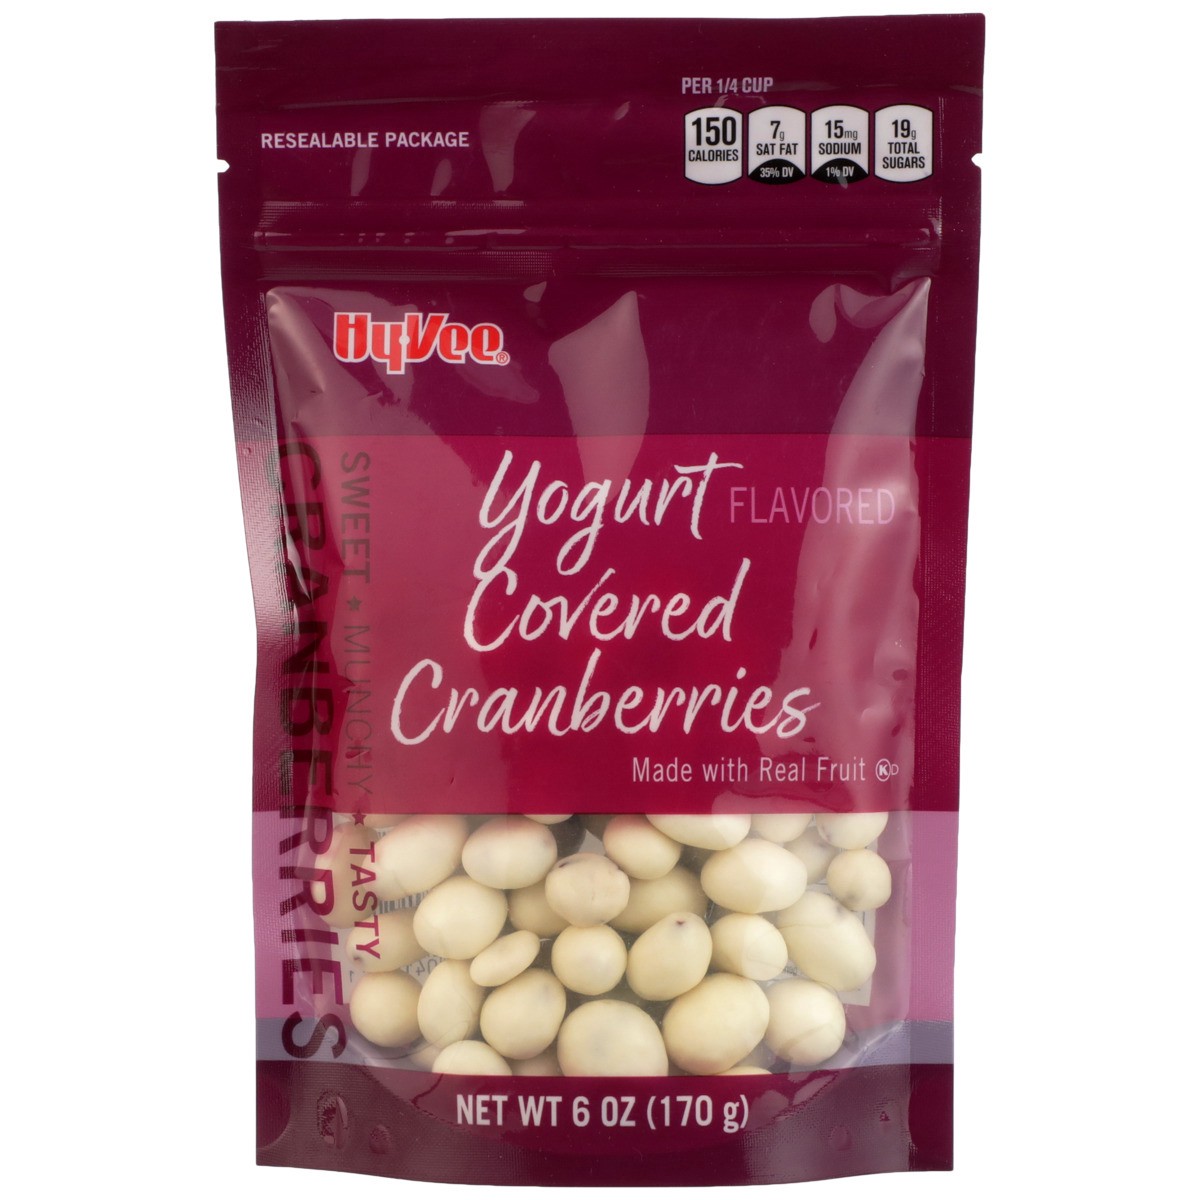 slide 7 of 8, Hy-vee Yogurt Flavored Covered Cranberries, 6 oz